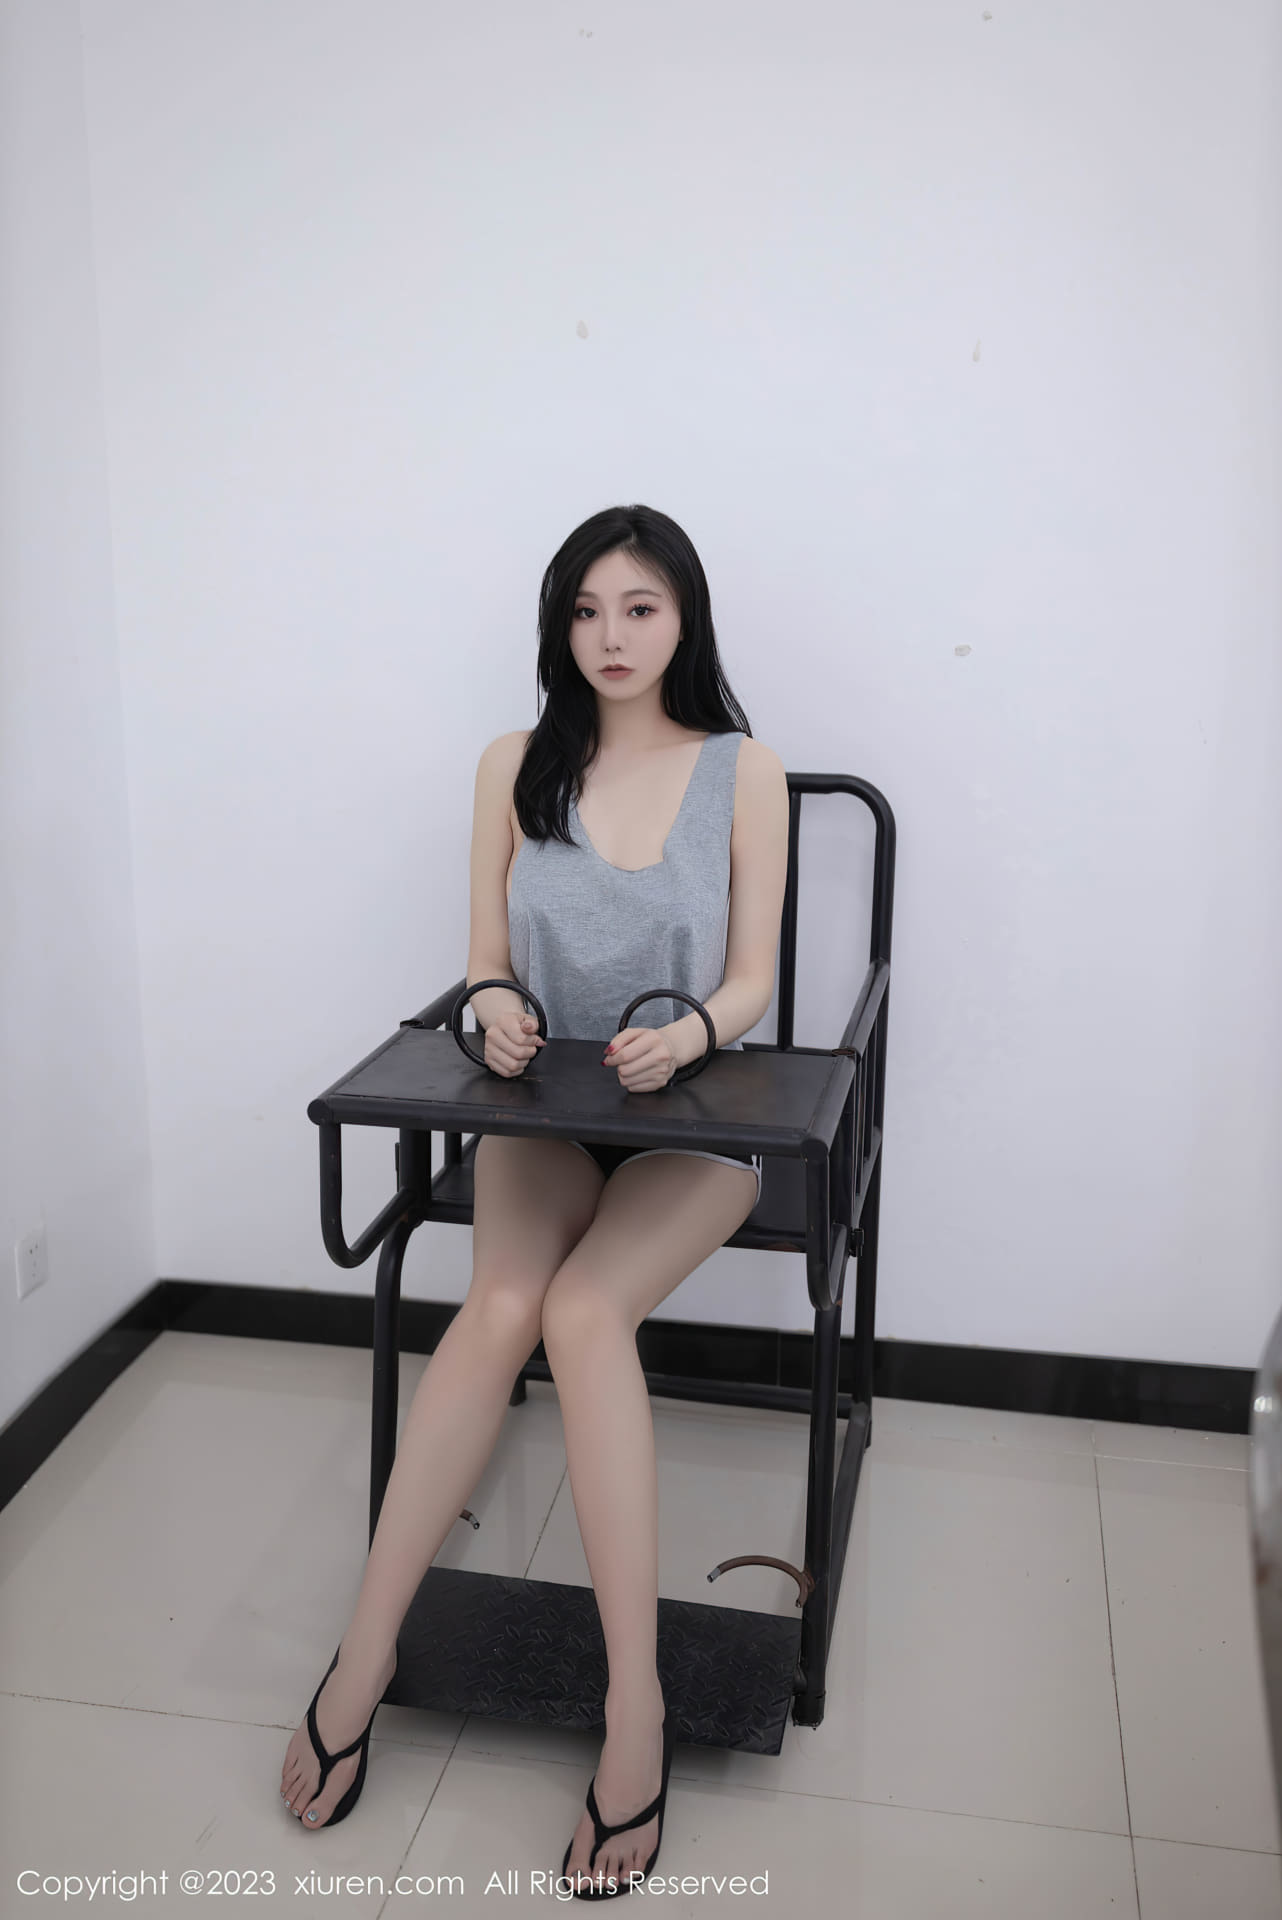 안란의 여자 취조실 테마 촬영, 회색 상의와 검정색 반바지, 수줍은 모습과 몽환적인 모습